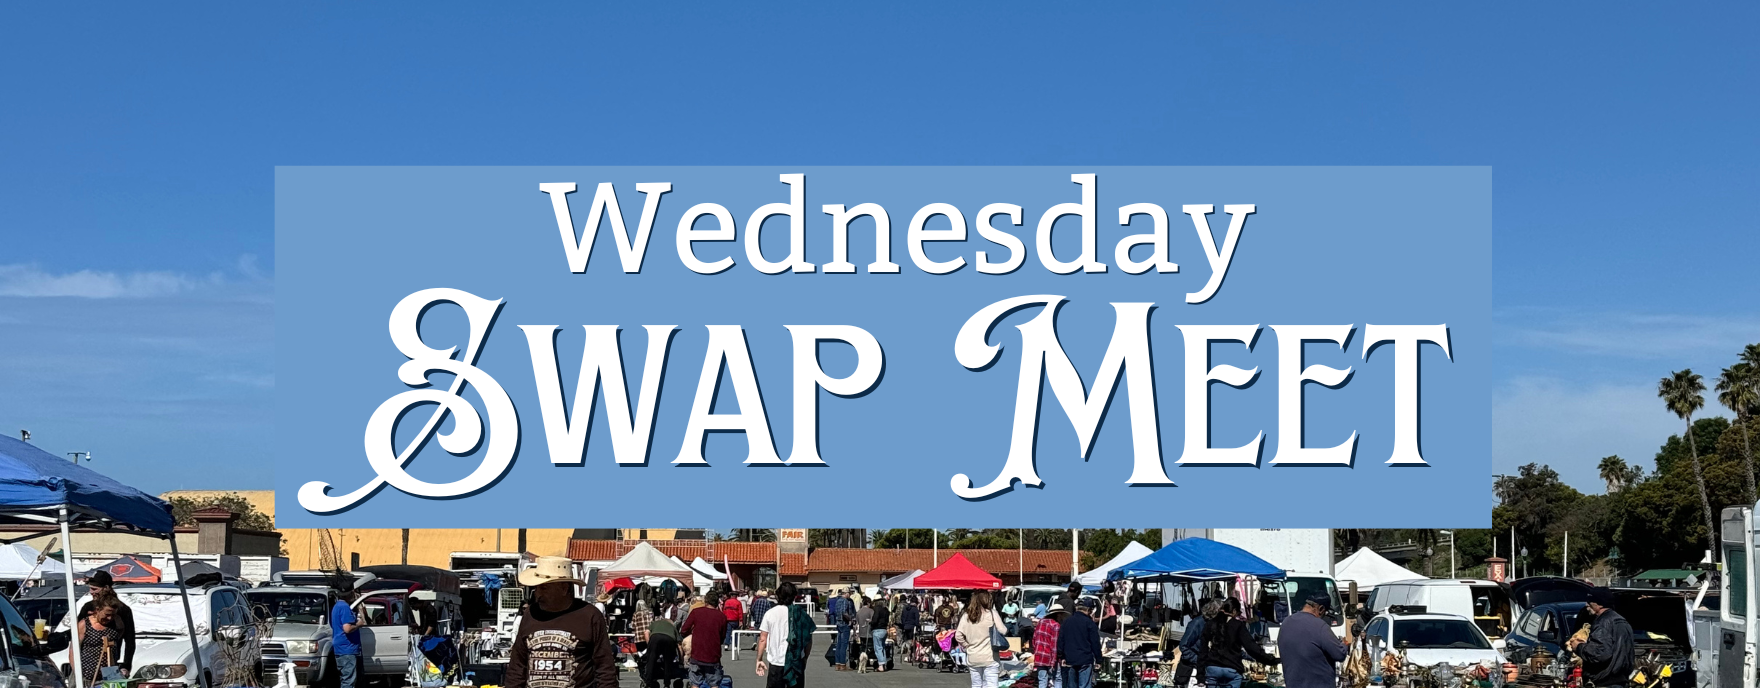 Wednesday Swap Meet